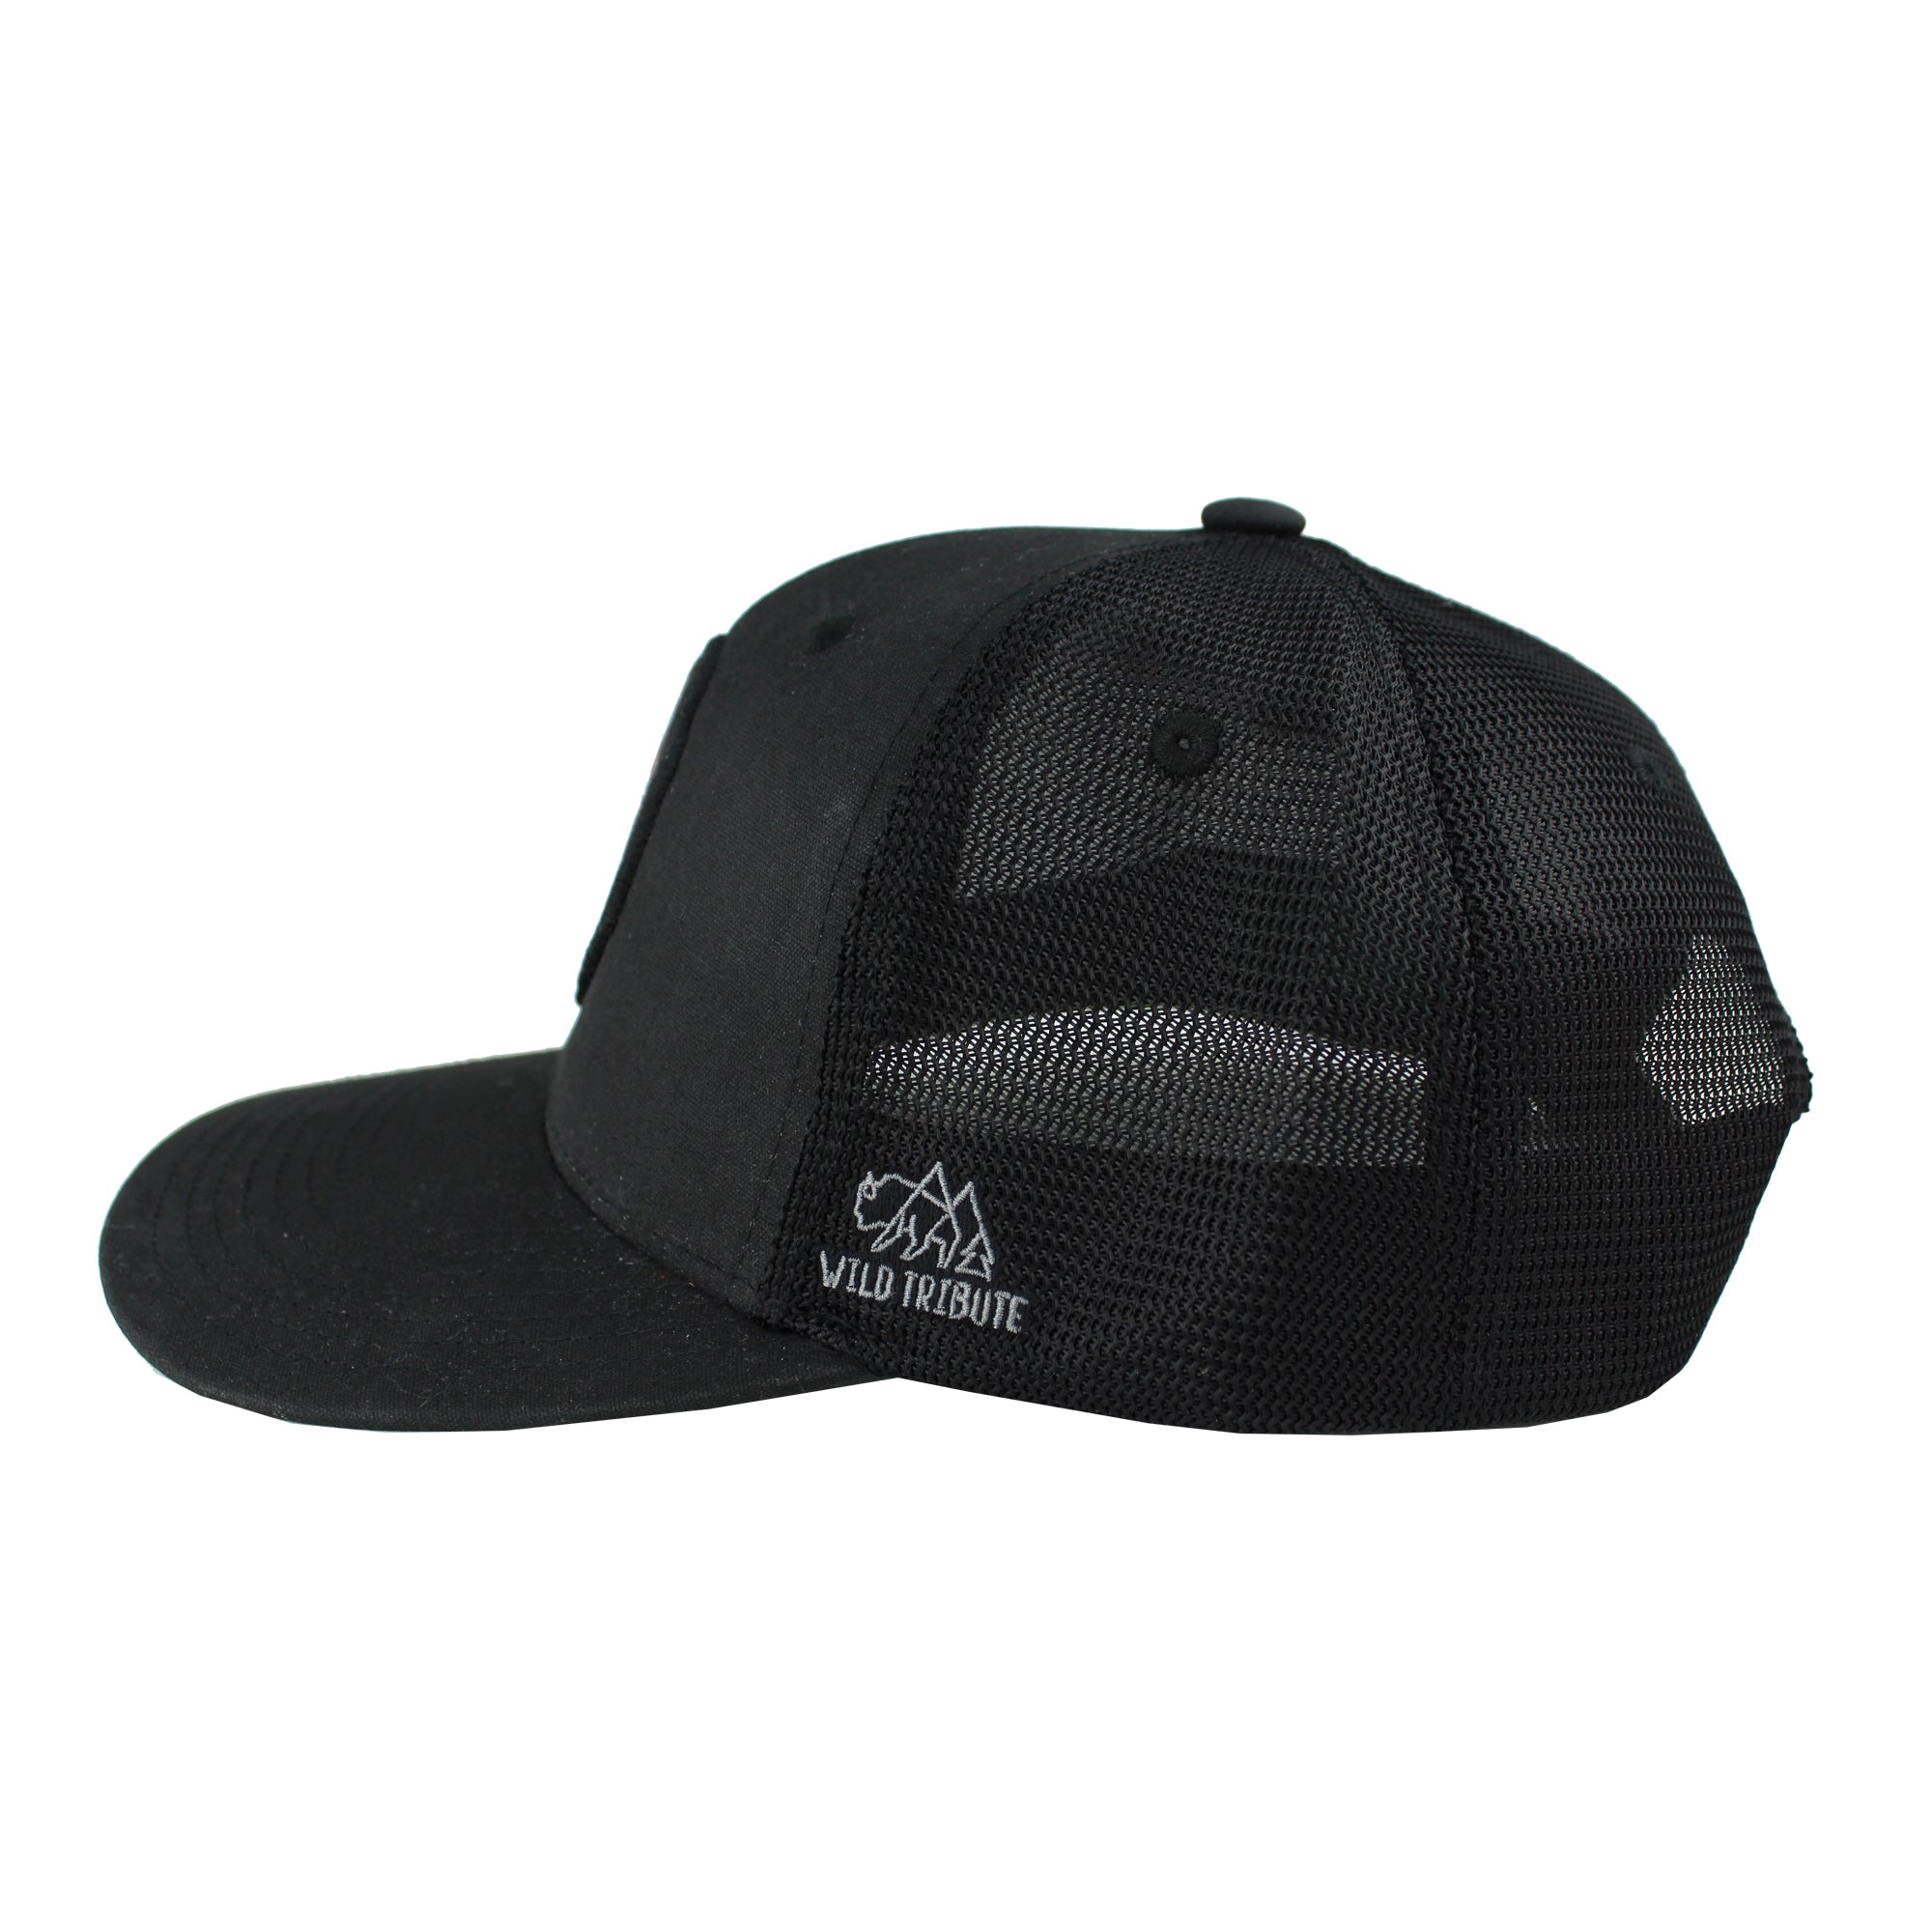 Yeti Mountaineer Hat Black - Mens - Caps Yeti